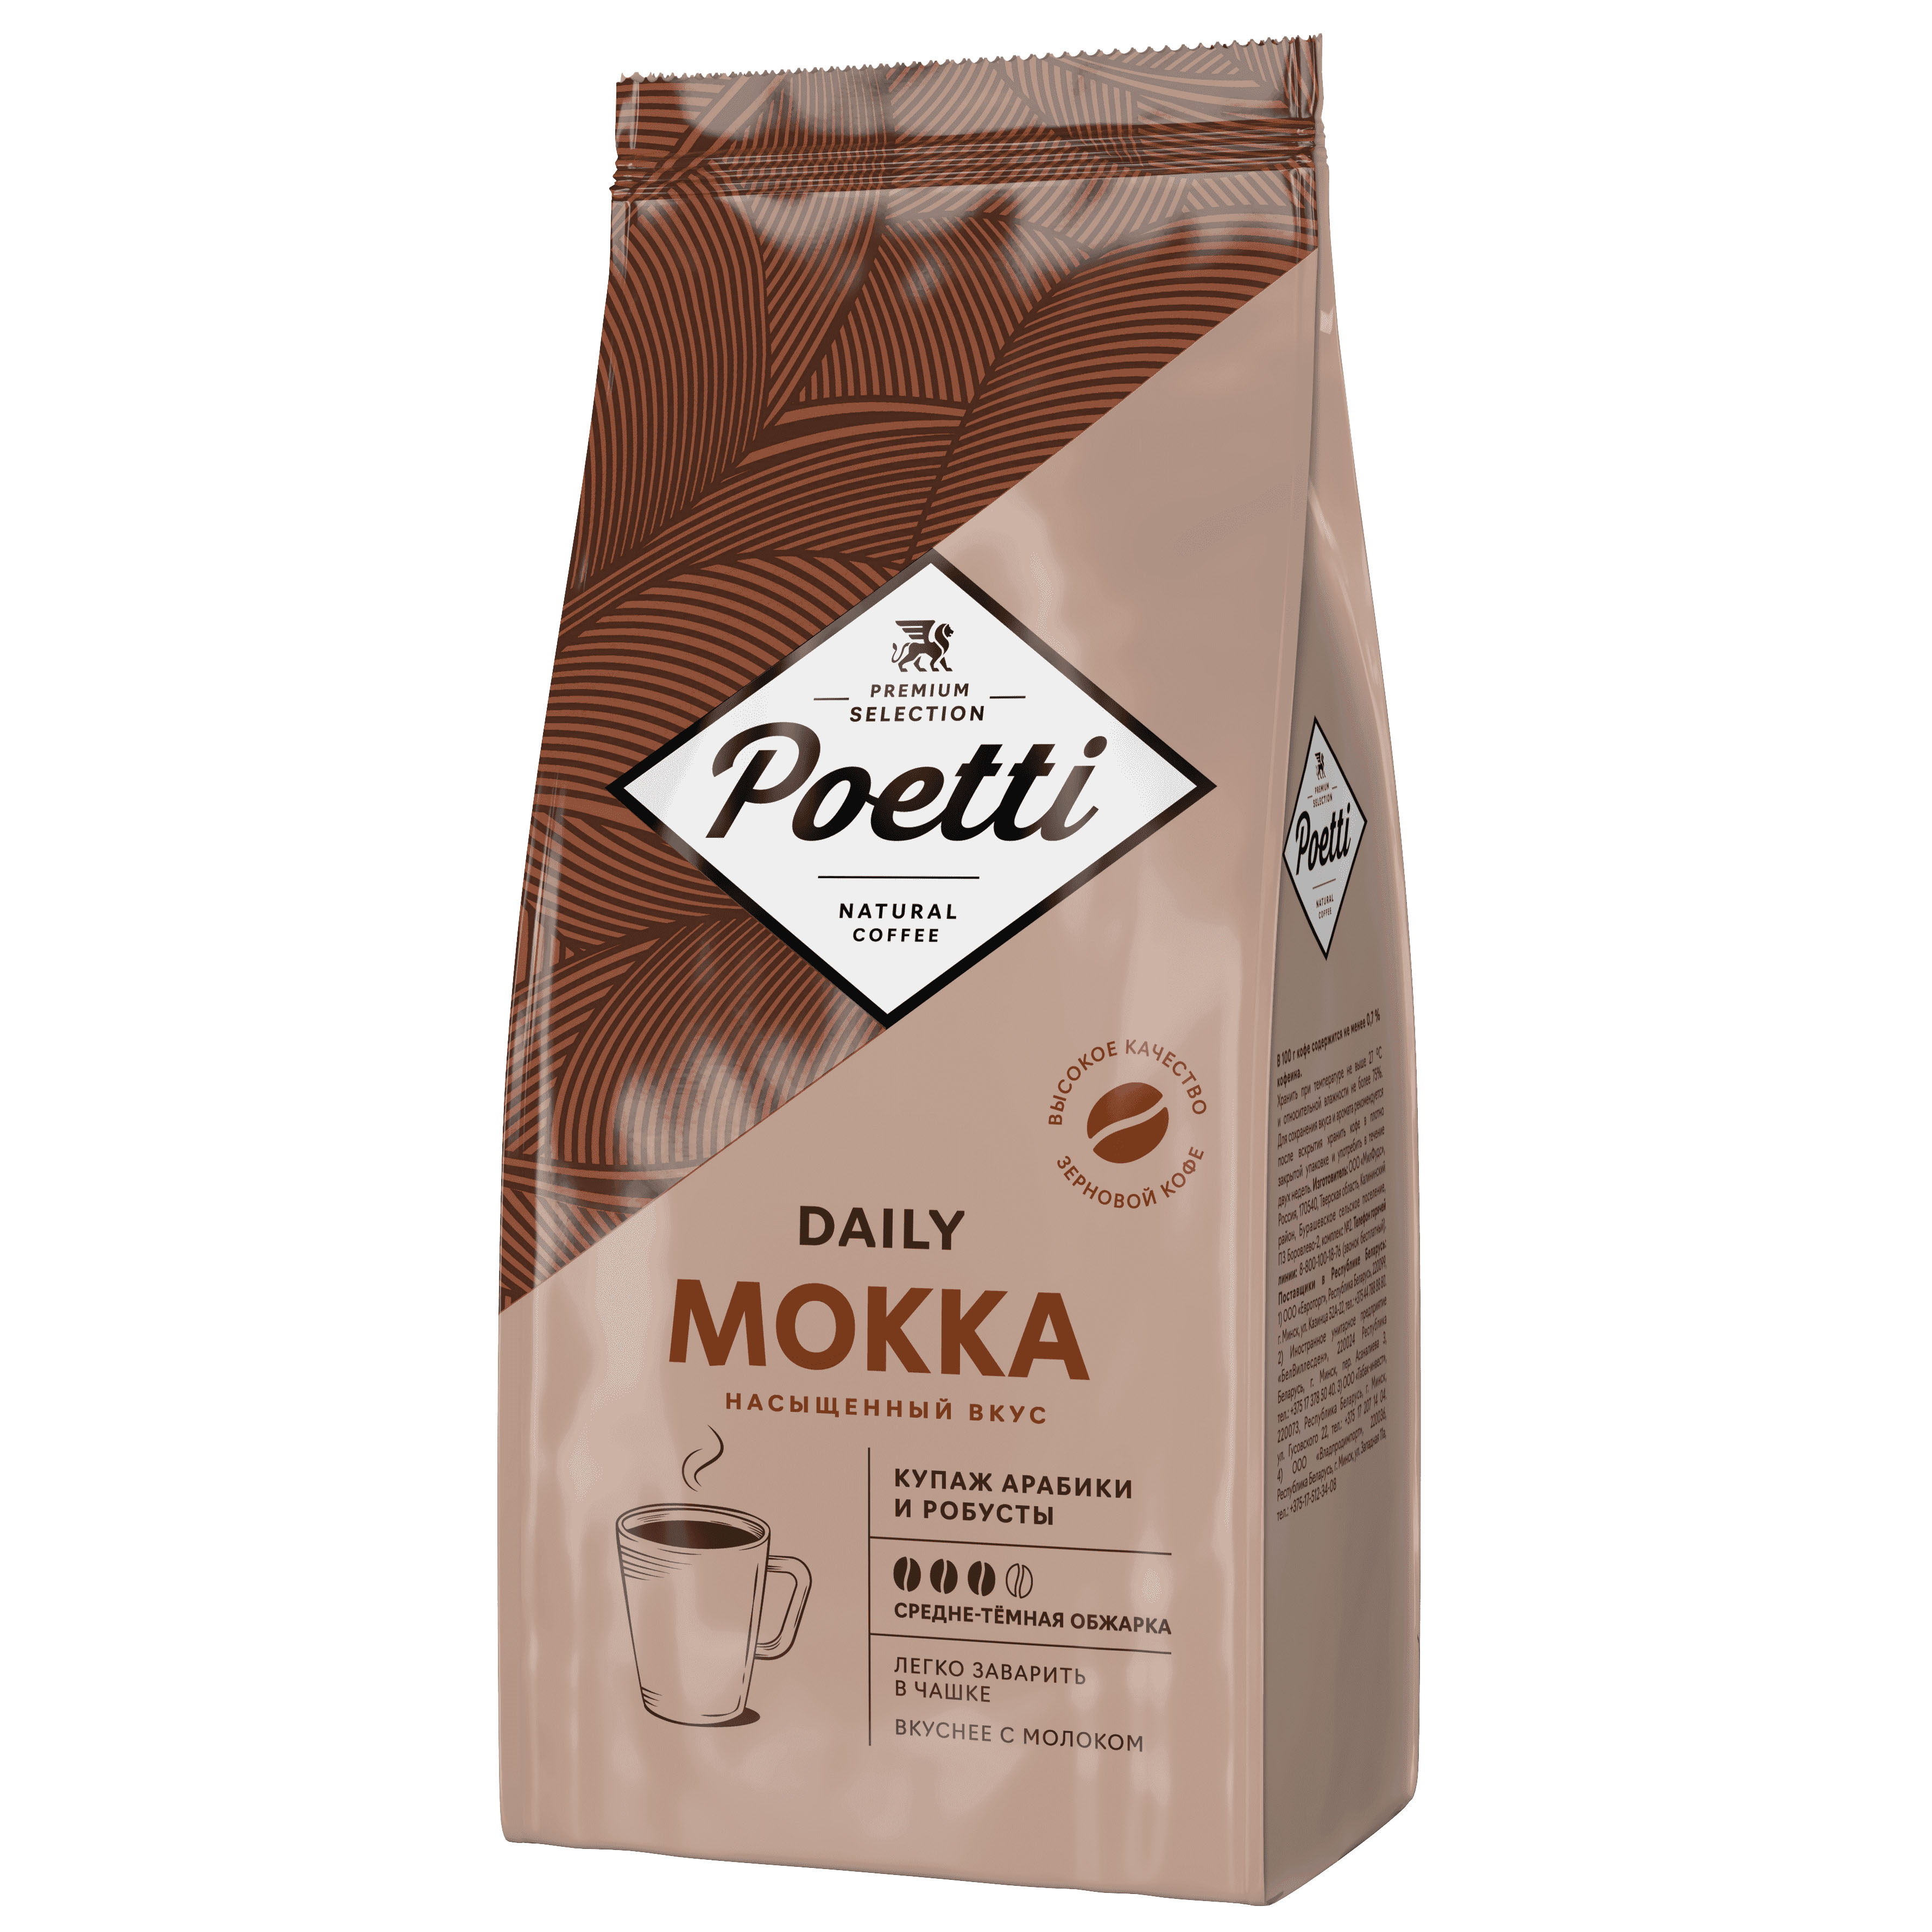 Кофе в зернах Poetti Mokka 1 кг кофе в зернах poetti daily mokka 1 кг